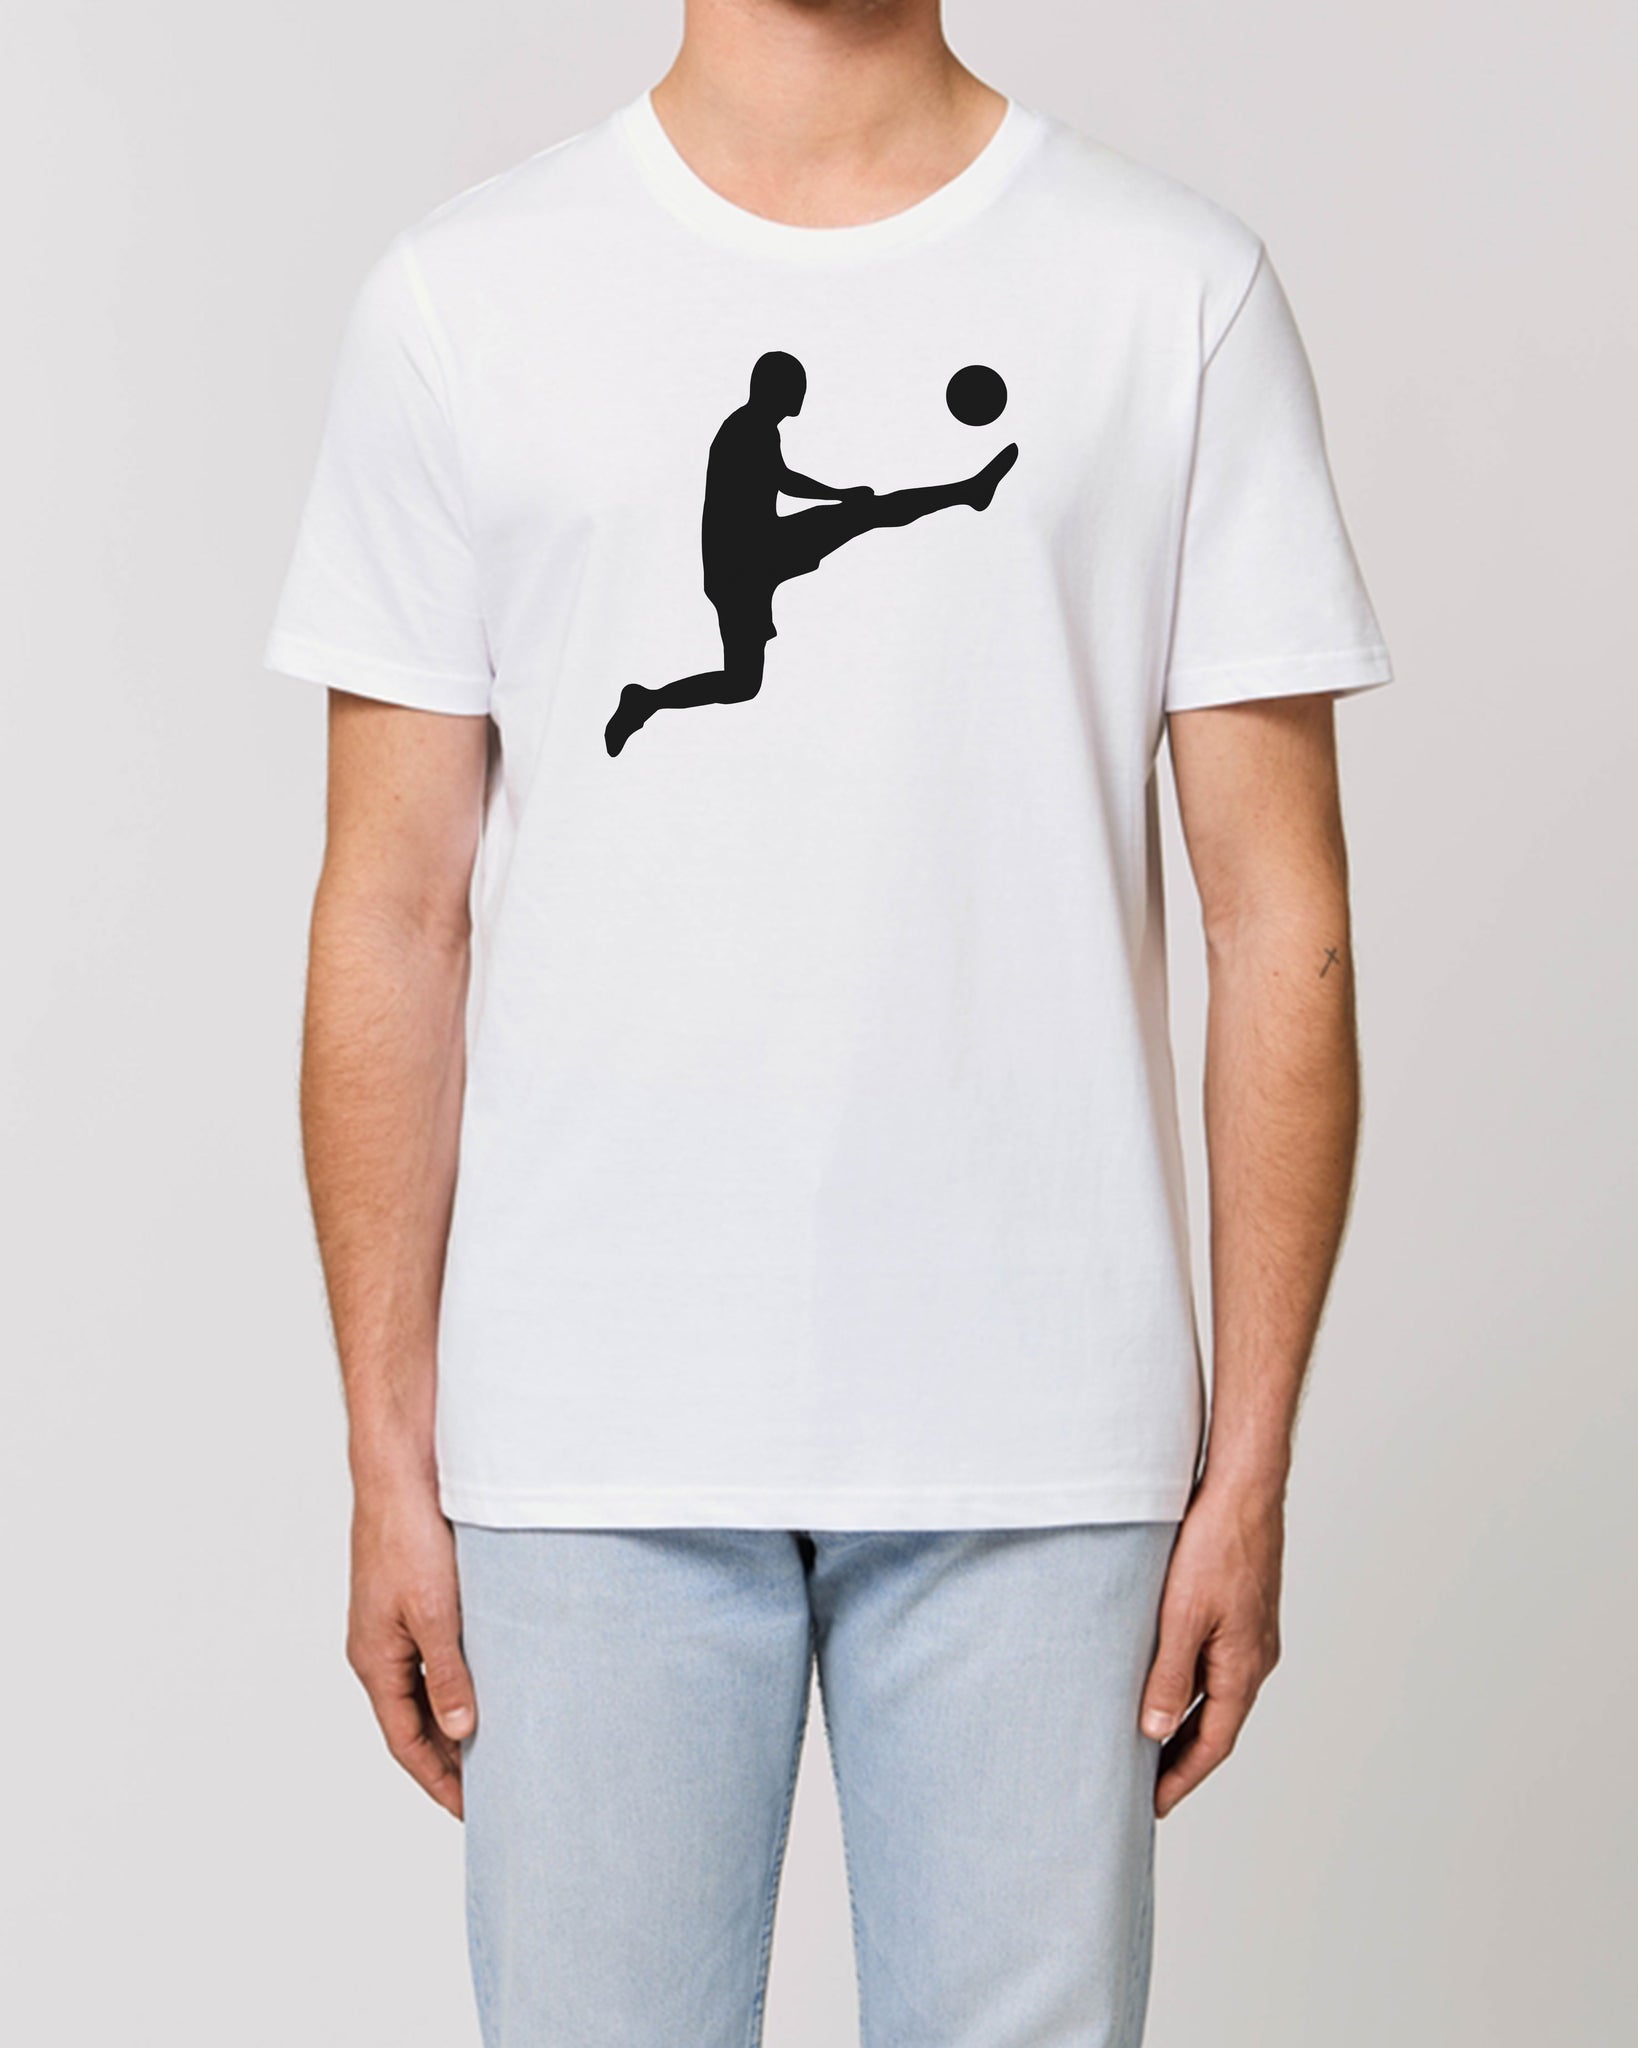 Tee Shirt "Zizou Porte Manteau" - Foot Dimanche 